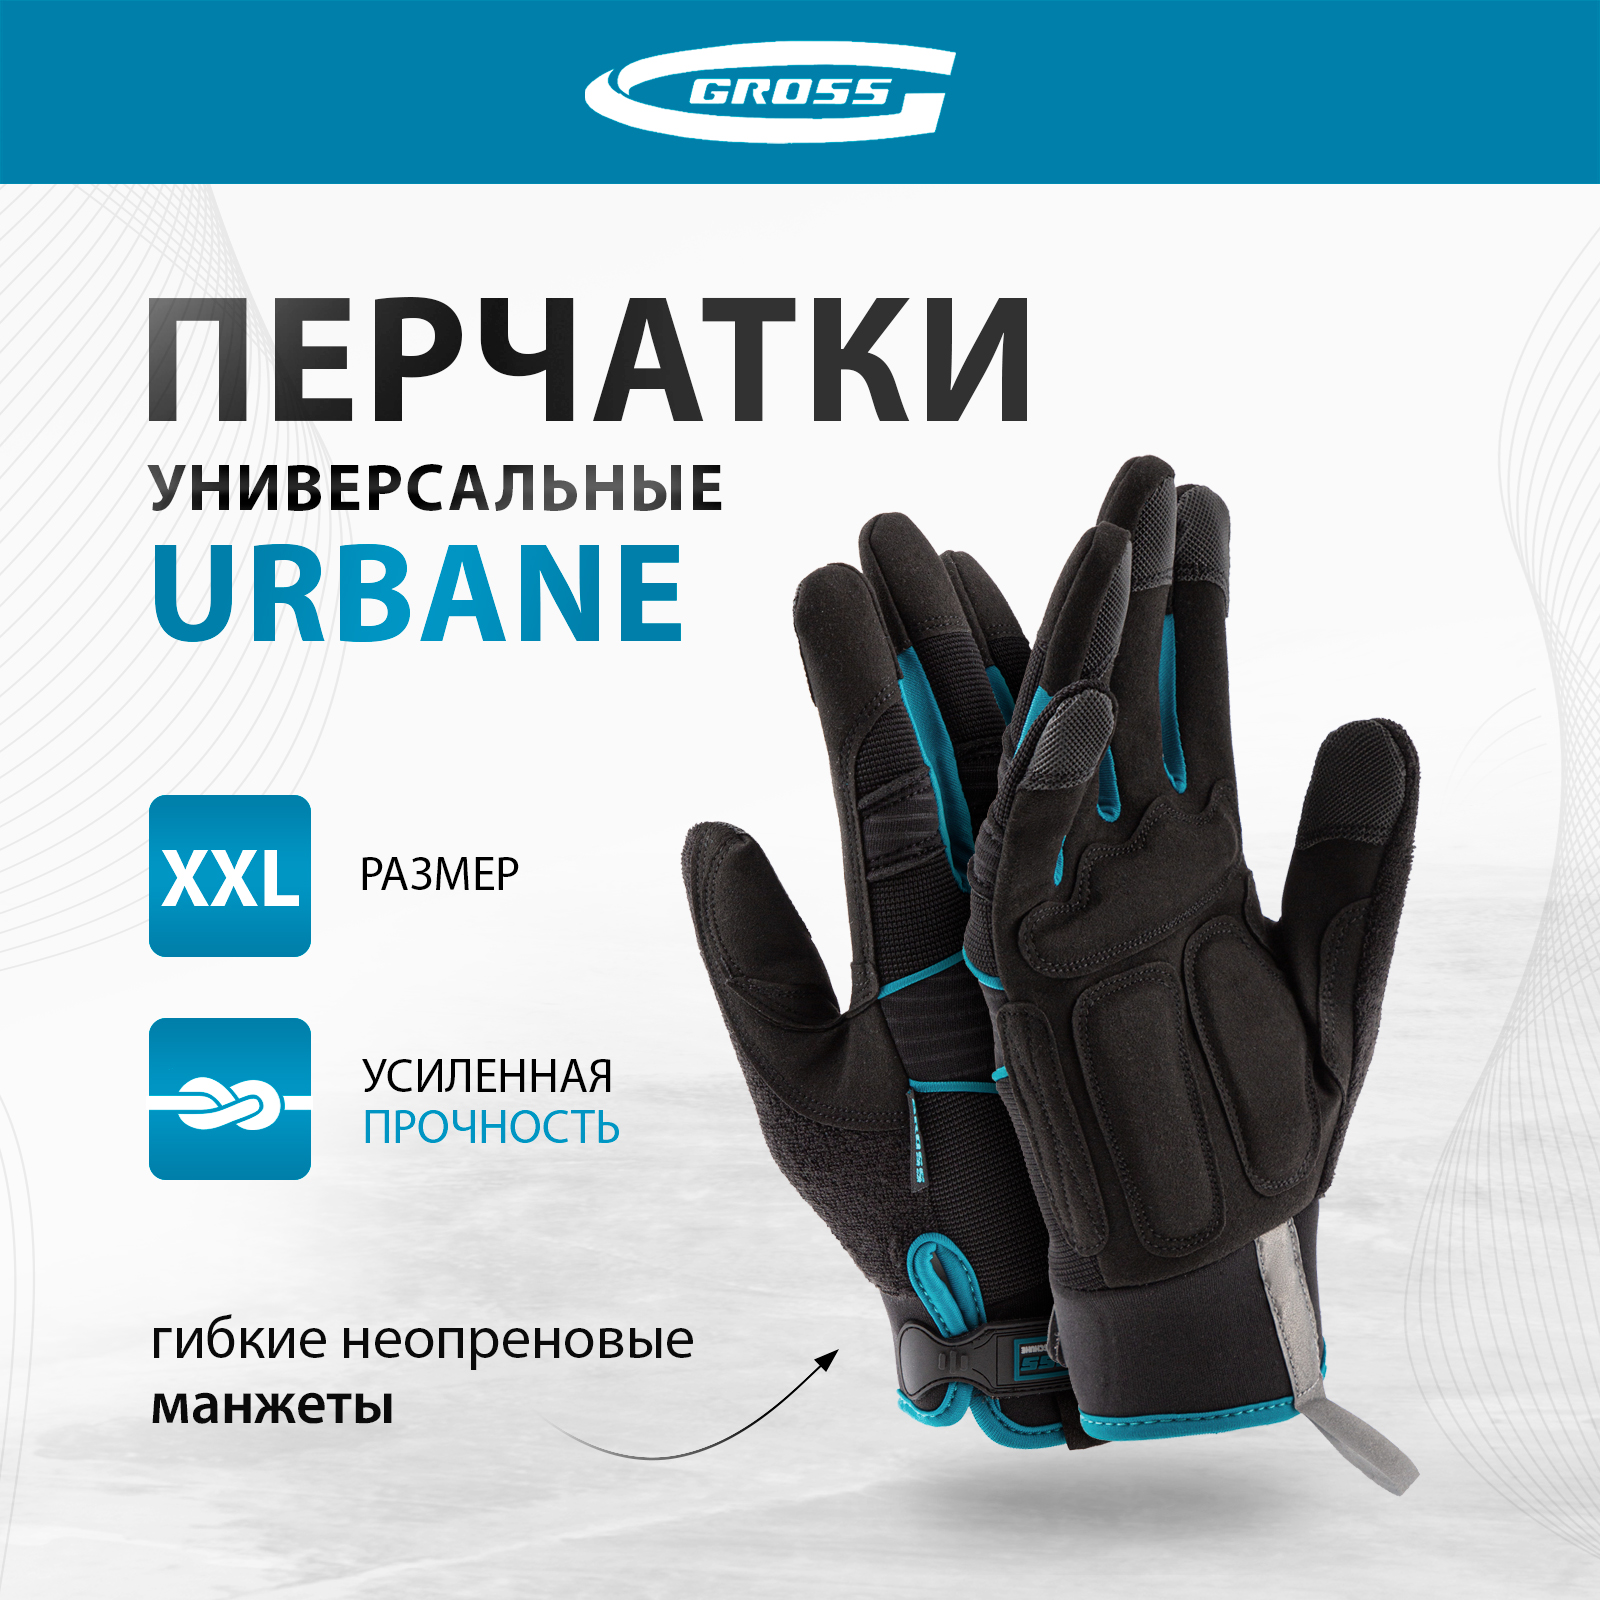 Перчатки универсальные комбинированные GROSS URBANE размер XL (10) 90313 перчатки универсальные комбинированные gross urbane размер xl 10 90313